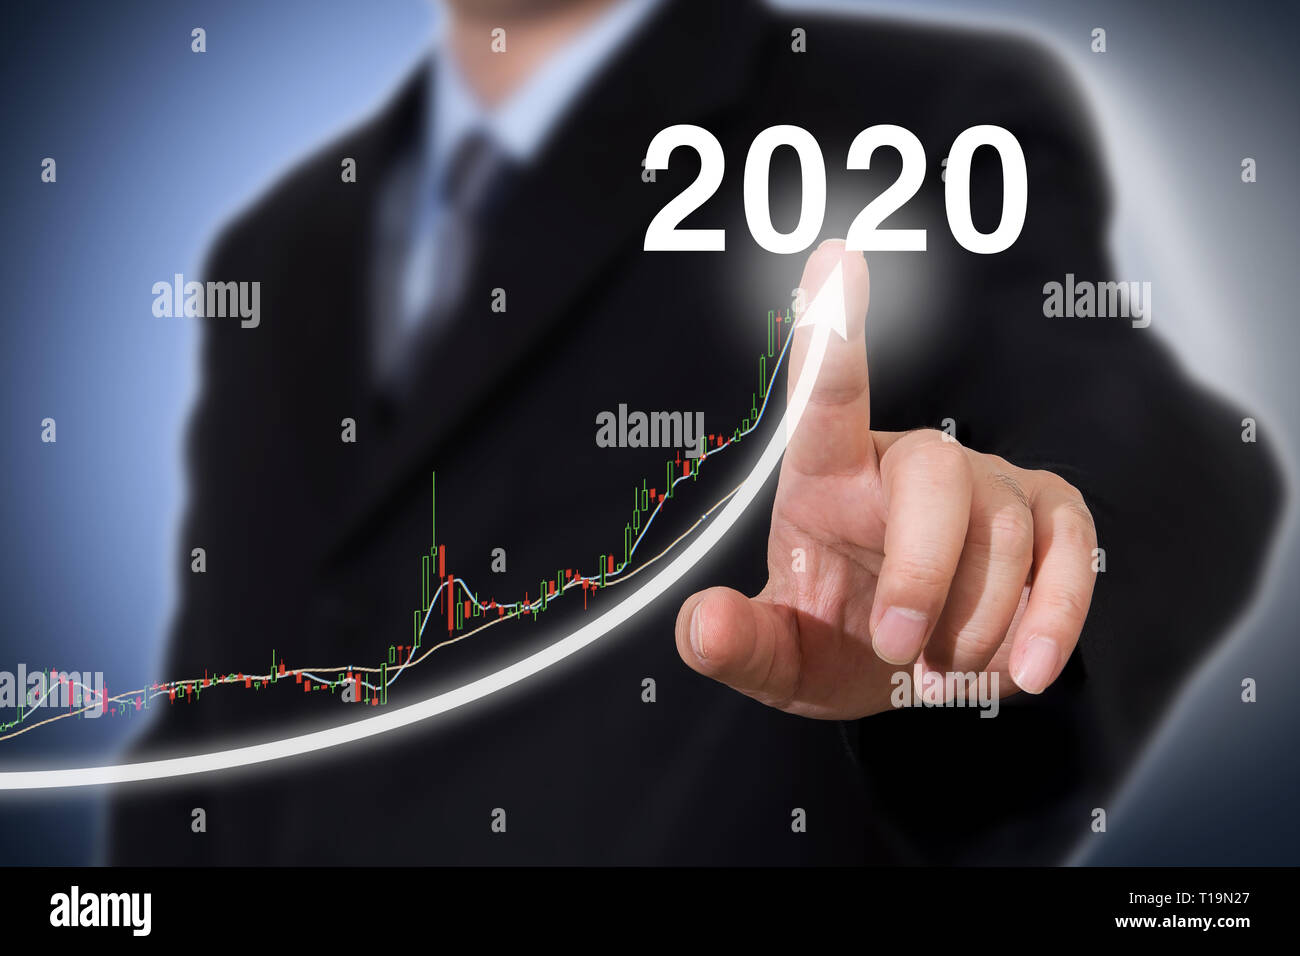 Sviluppo e crescita anno 2020 concept. Imprenditore anno nuovo concetto. Foto Stock